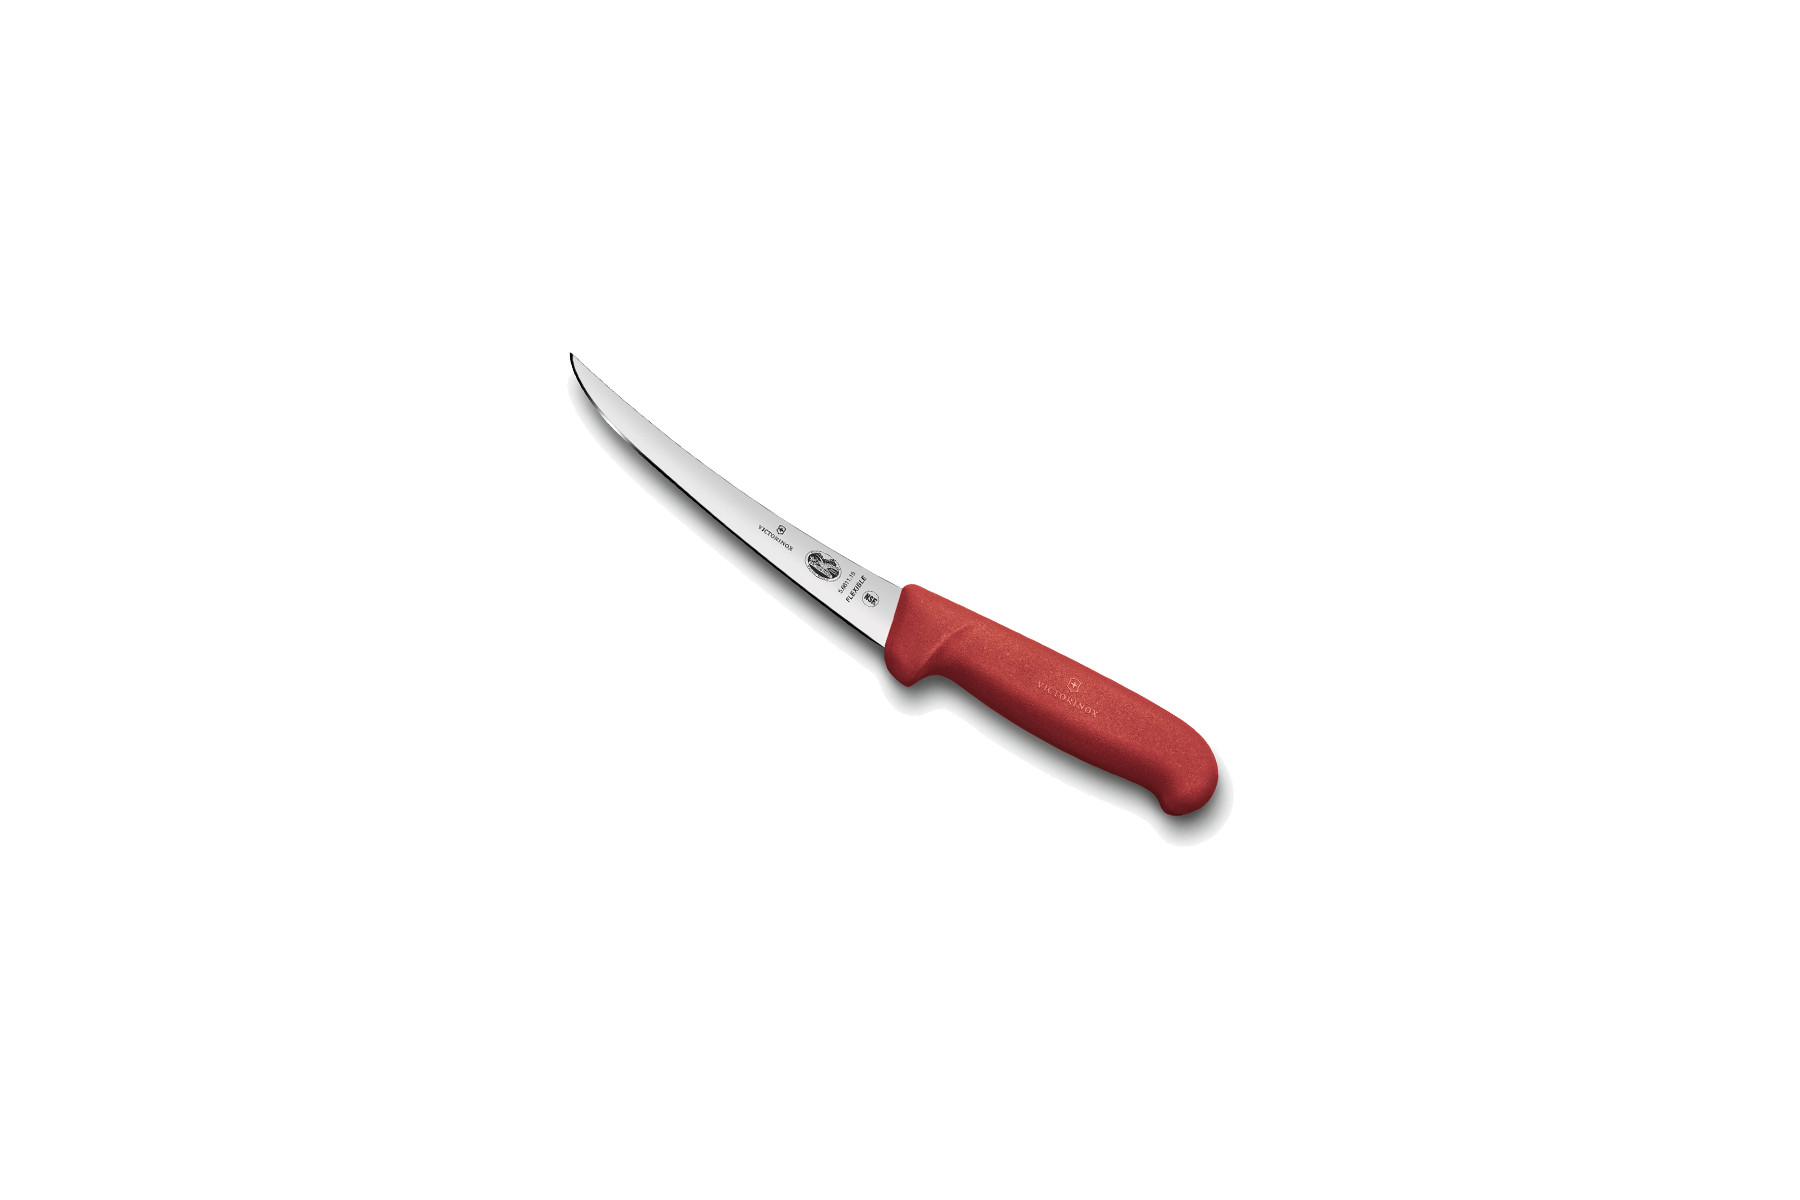 Couteau à désosser Victorinox lame flexible dos renversé 12 cm - Manche Fibrox rouge